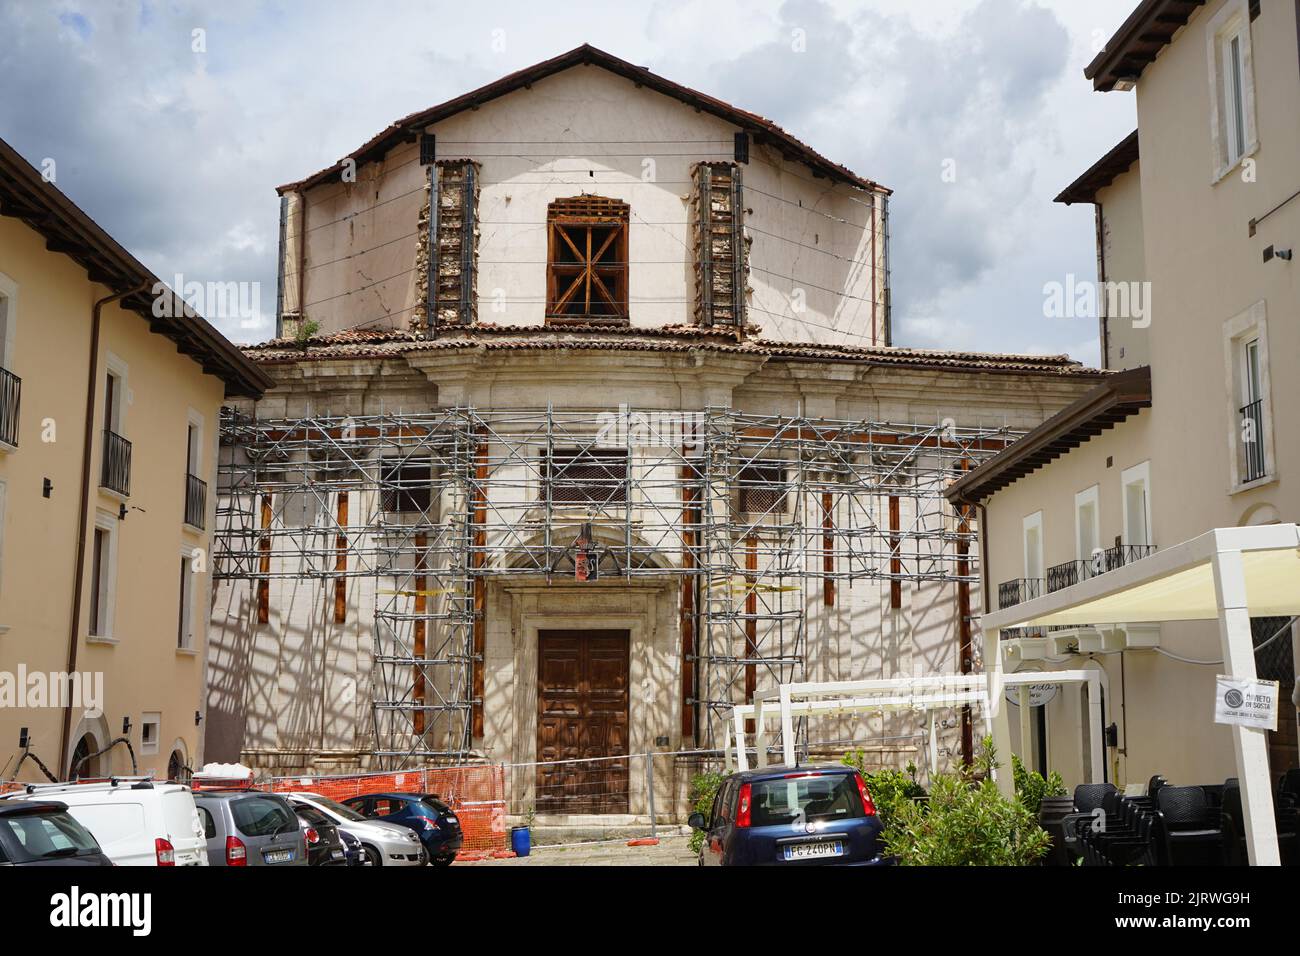 Historische Fassade, Sicherung durch ein Metallgerüst nach dem Erbeben von 2009, L’Aquila, Piazza S. Biago, Abruzzen, Italien, Europa Stock Photo